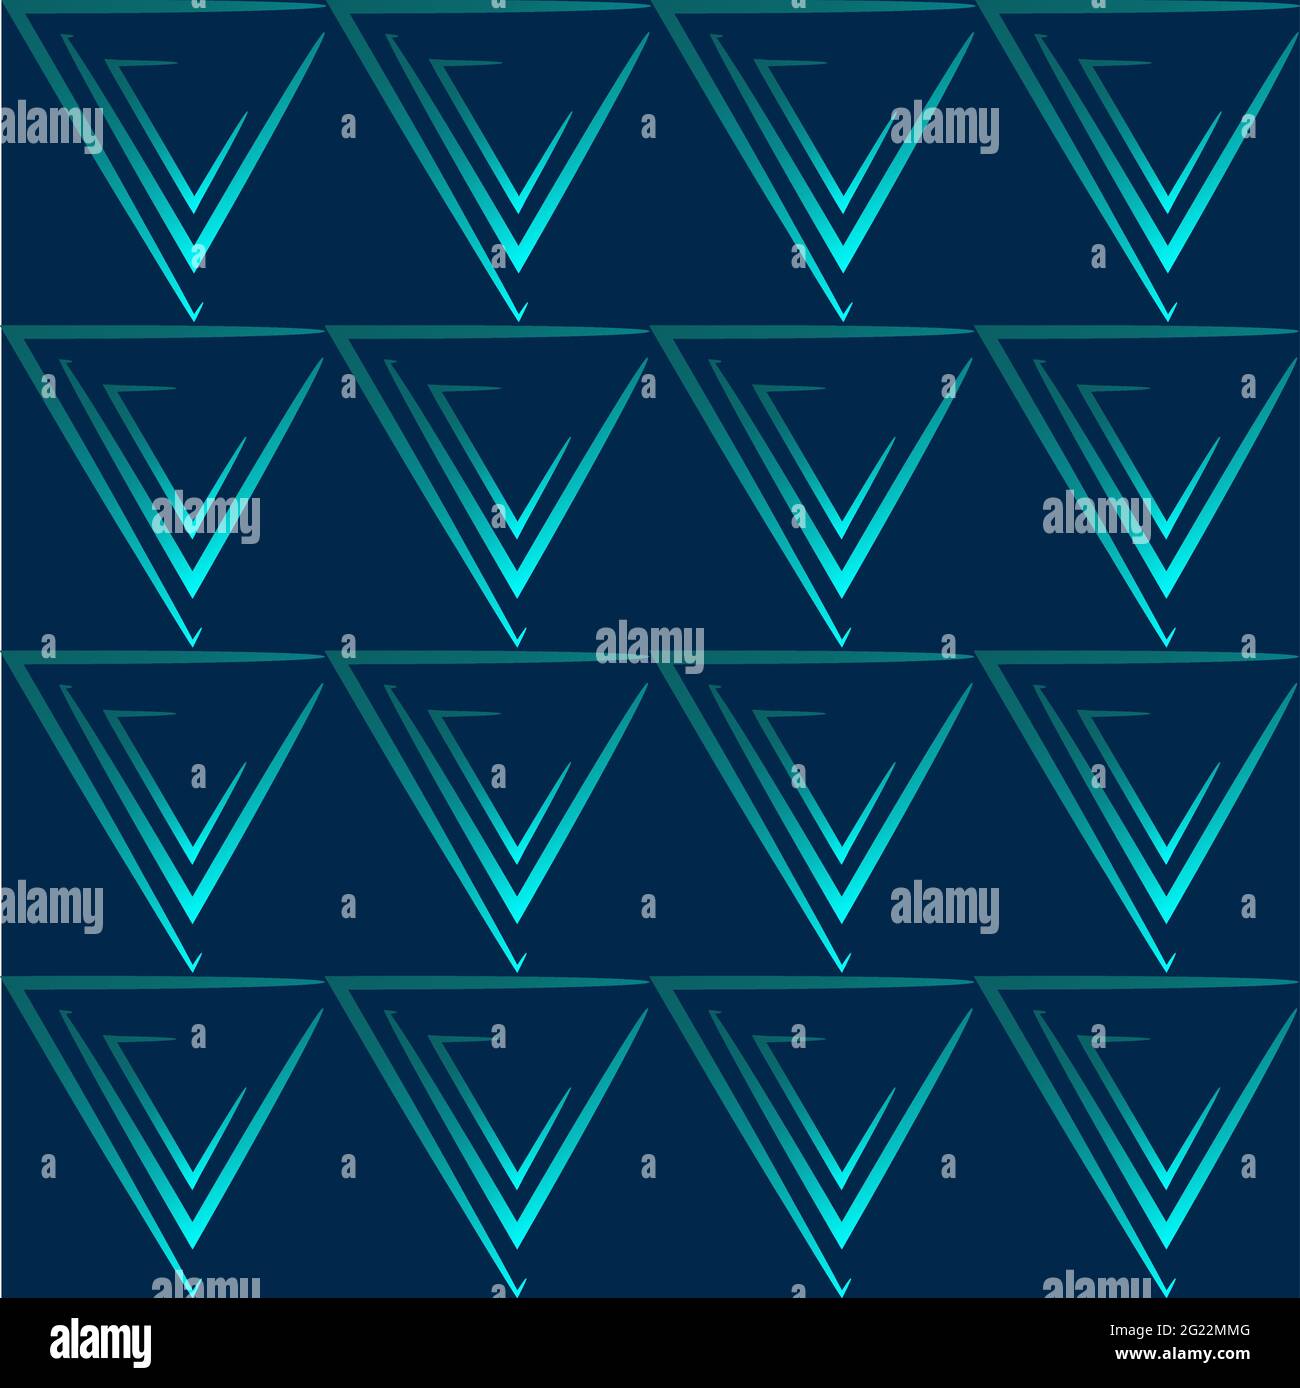 Abstraktes geometrisches Muster. Türkisfarbene Dreiecke auf dunkelblauem Hintergrund. Geeignet für Textilien, Grußkarten, Einladungskarten, Geschenkpapier. Stock Vektor